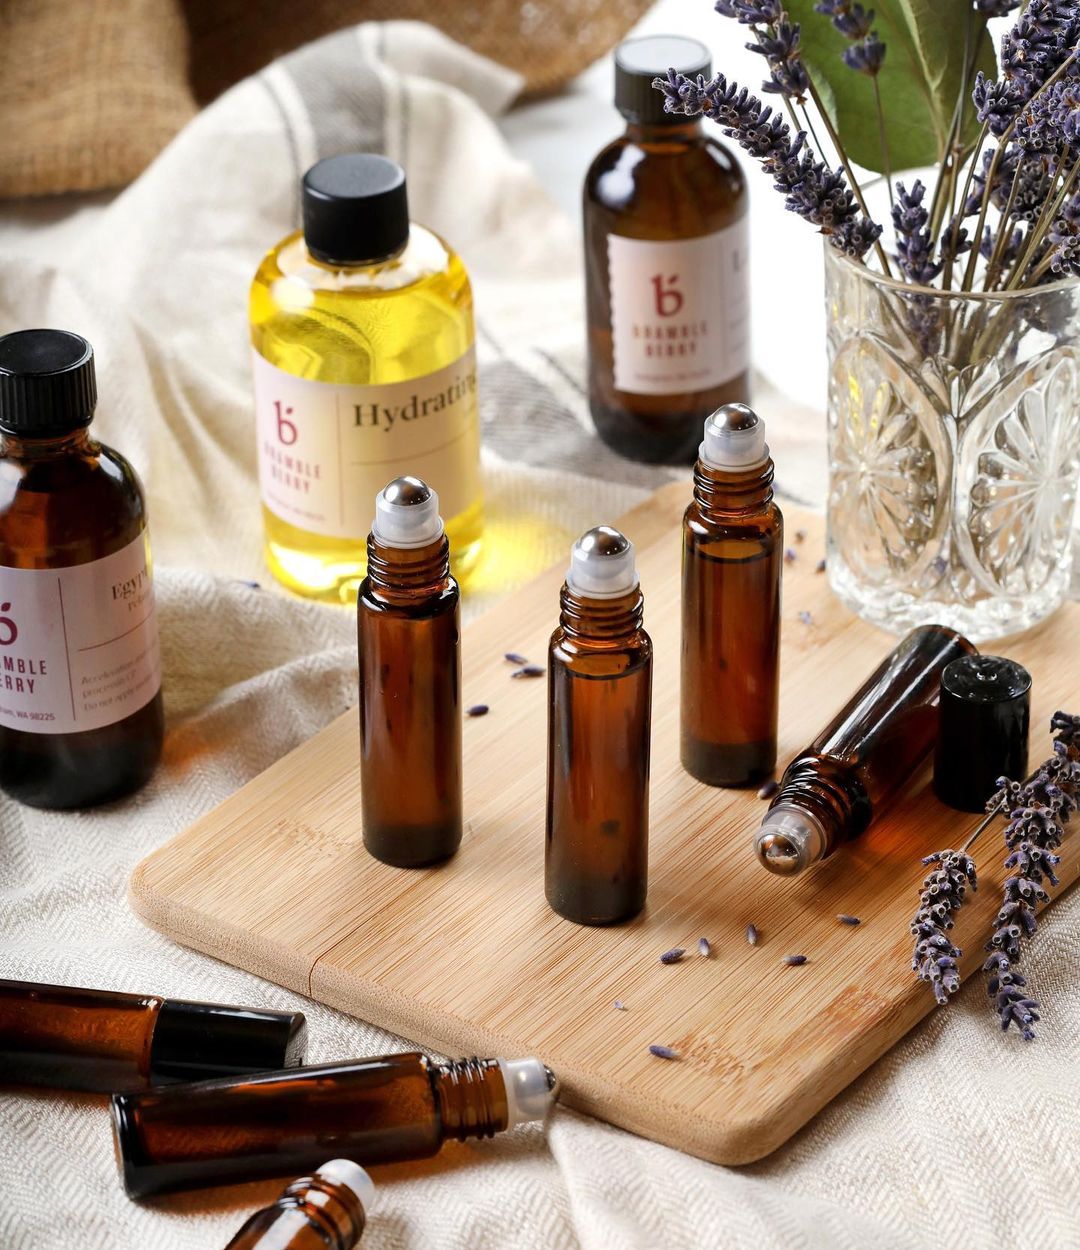 Natural Fragrance Oils